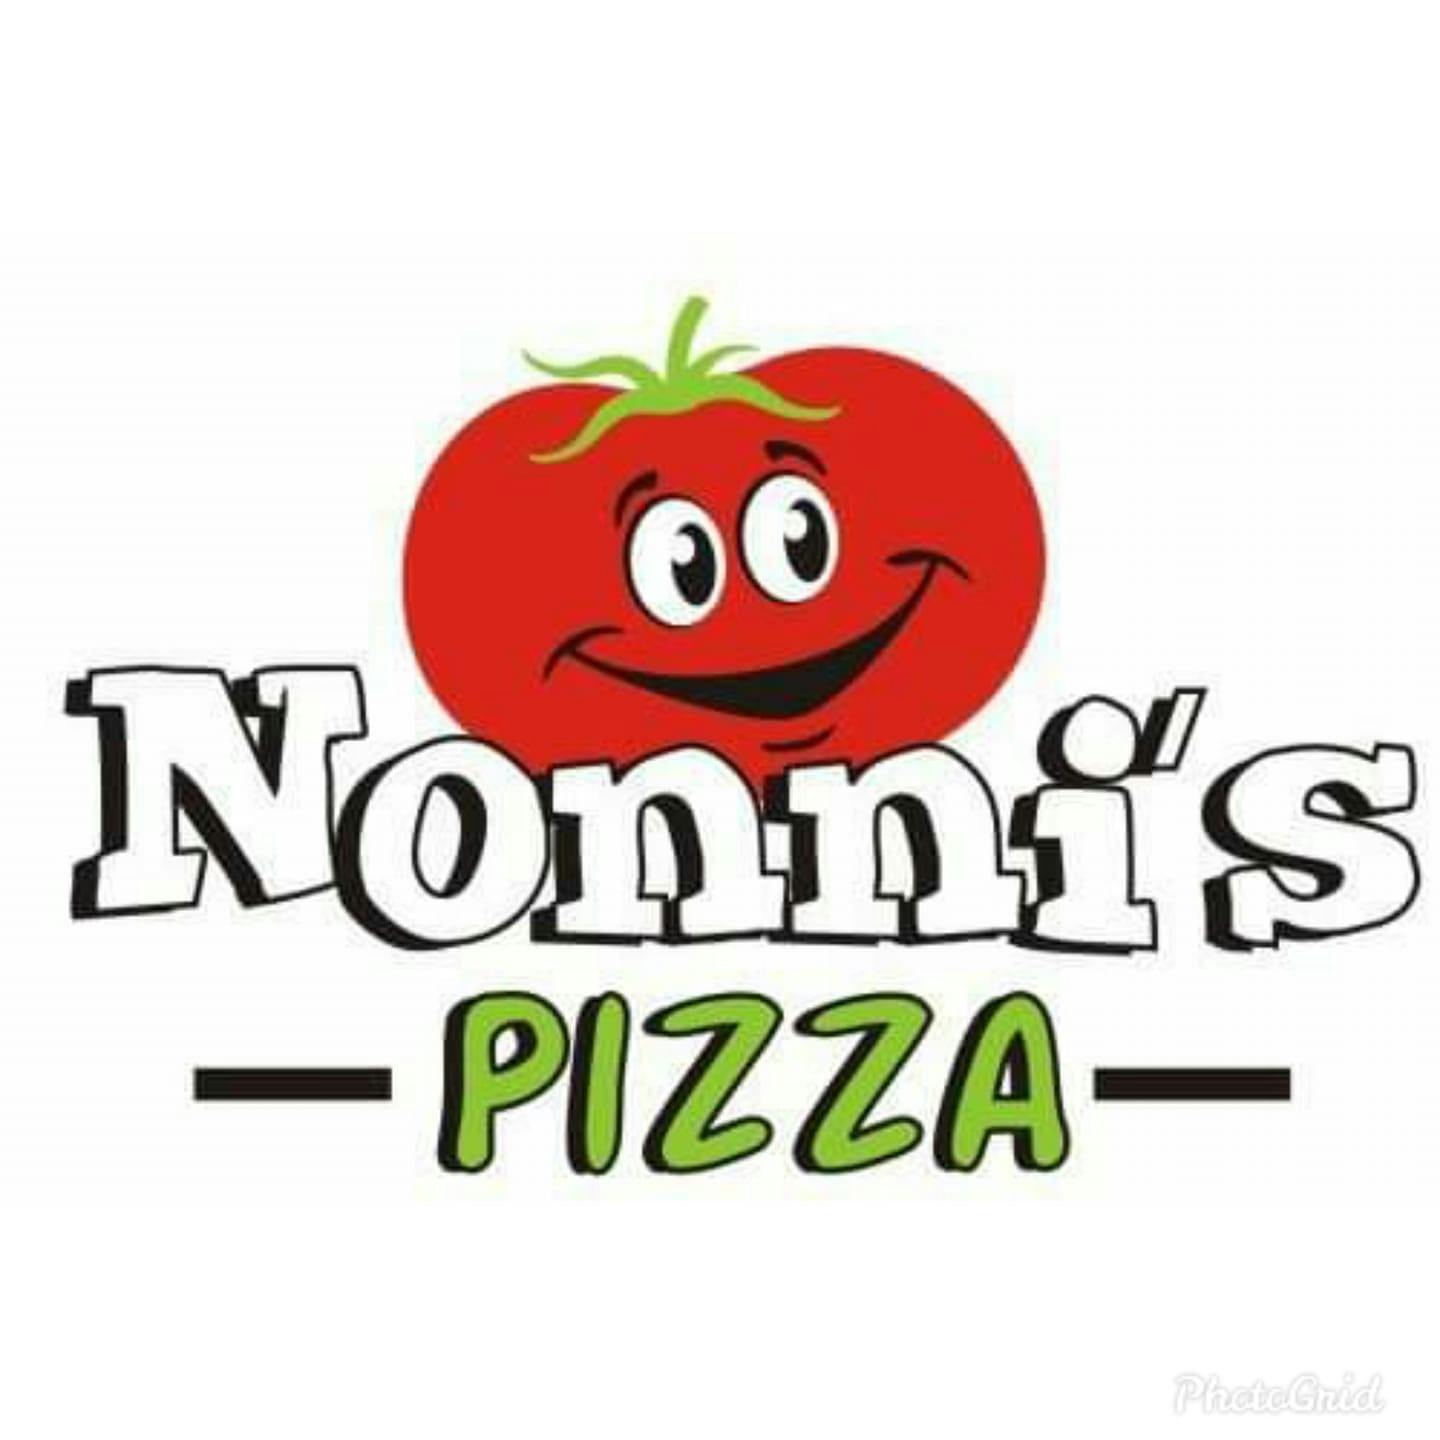 Nonni's Pizza